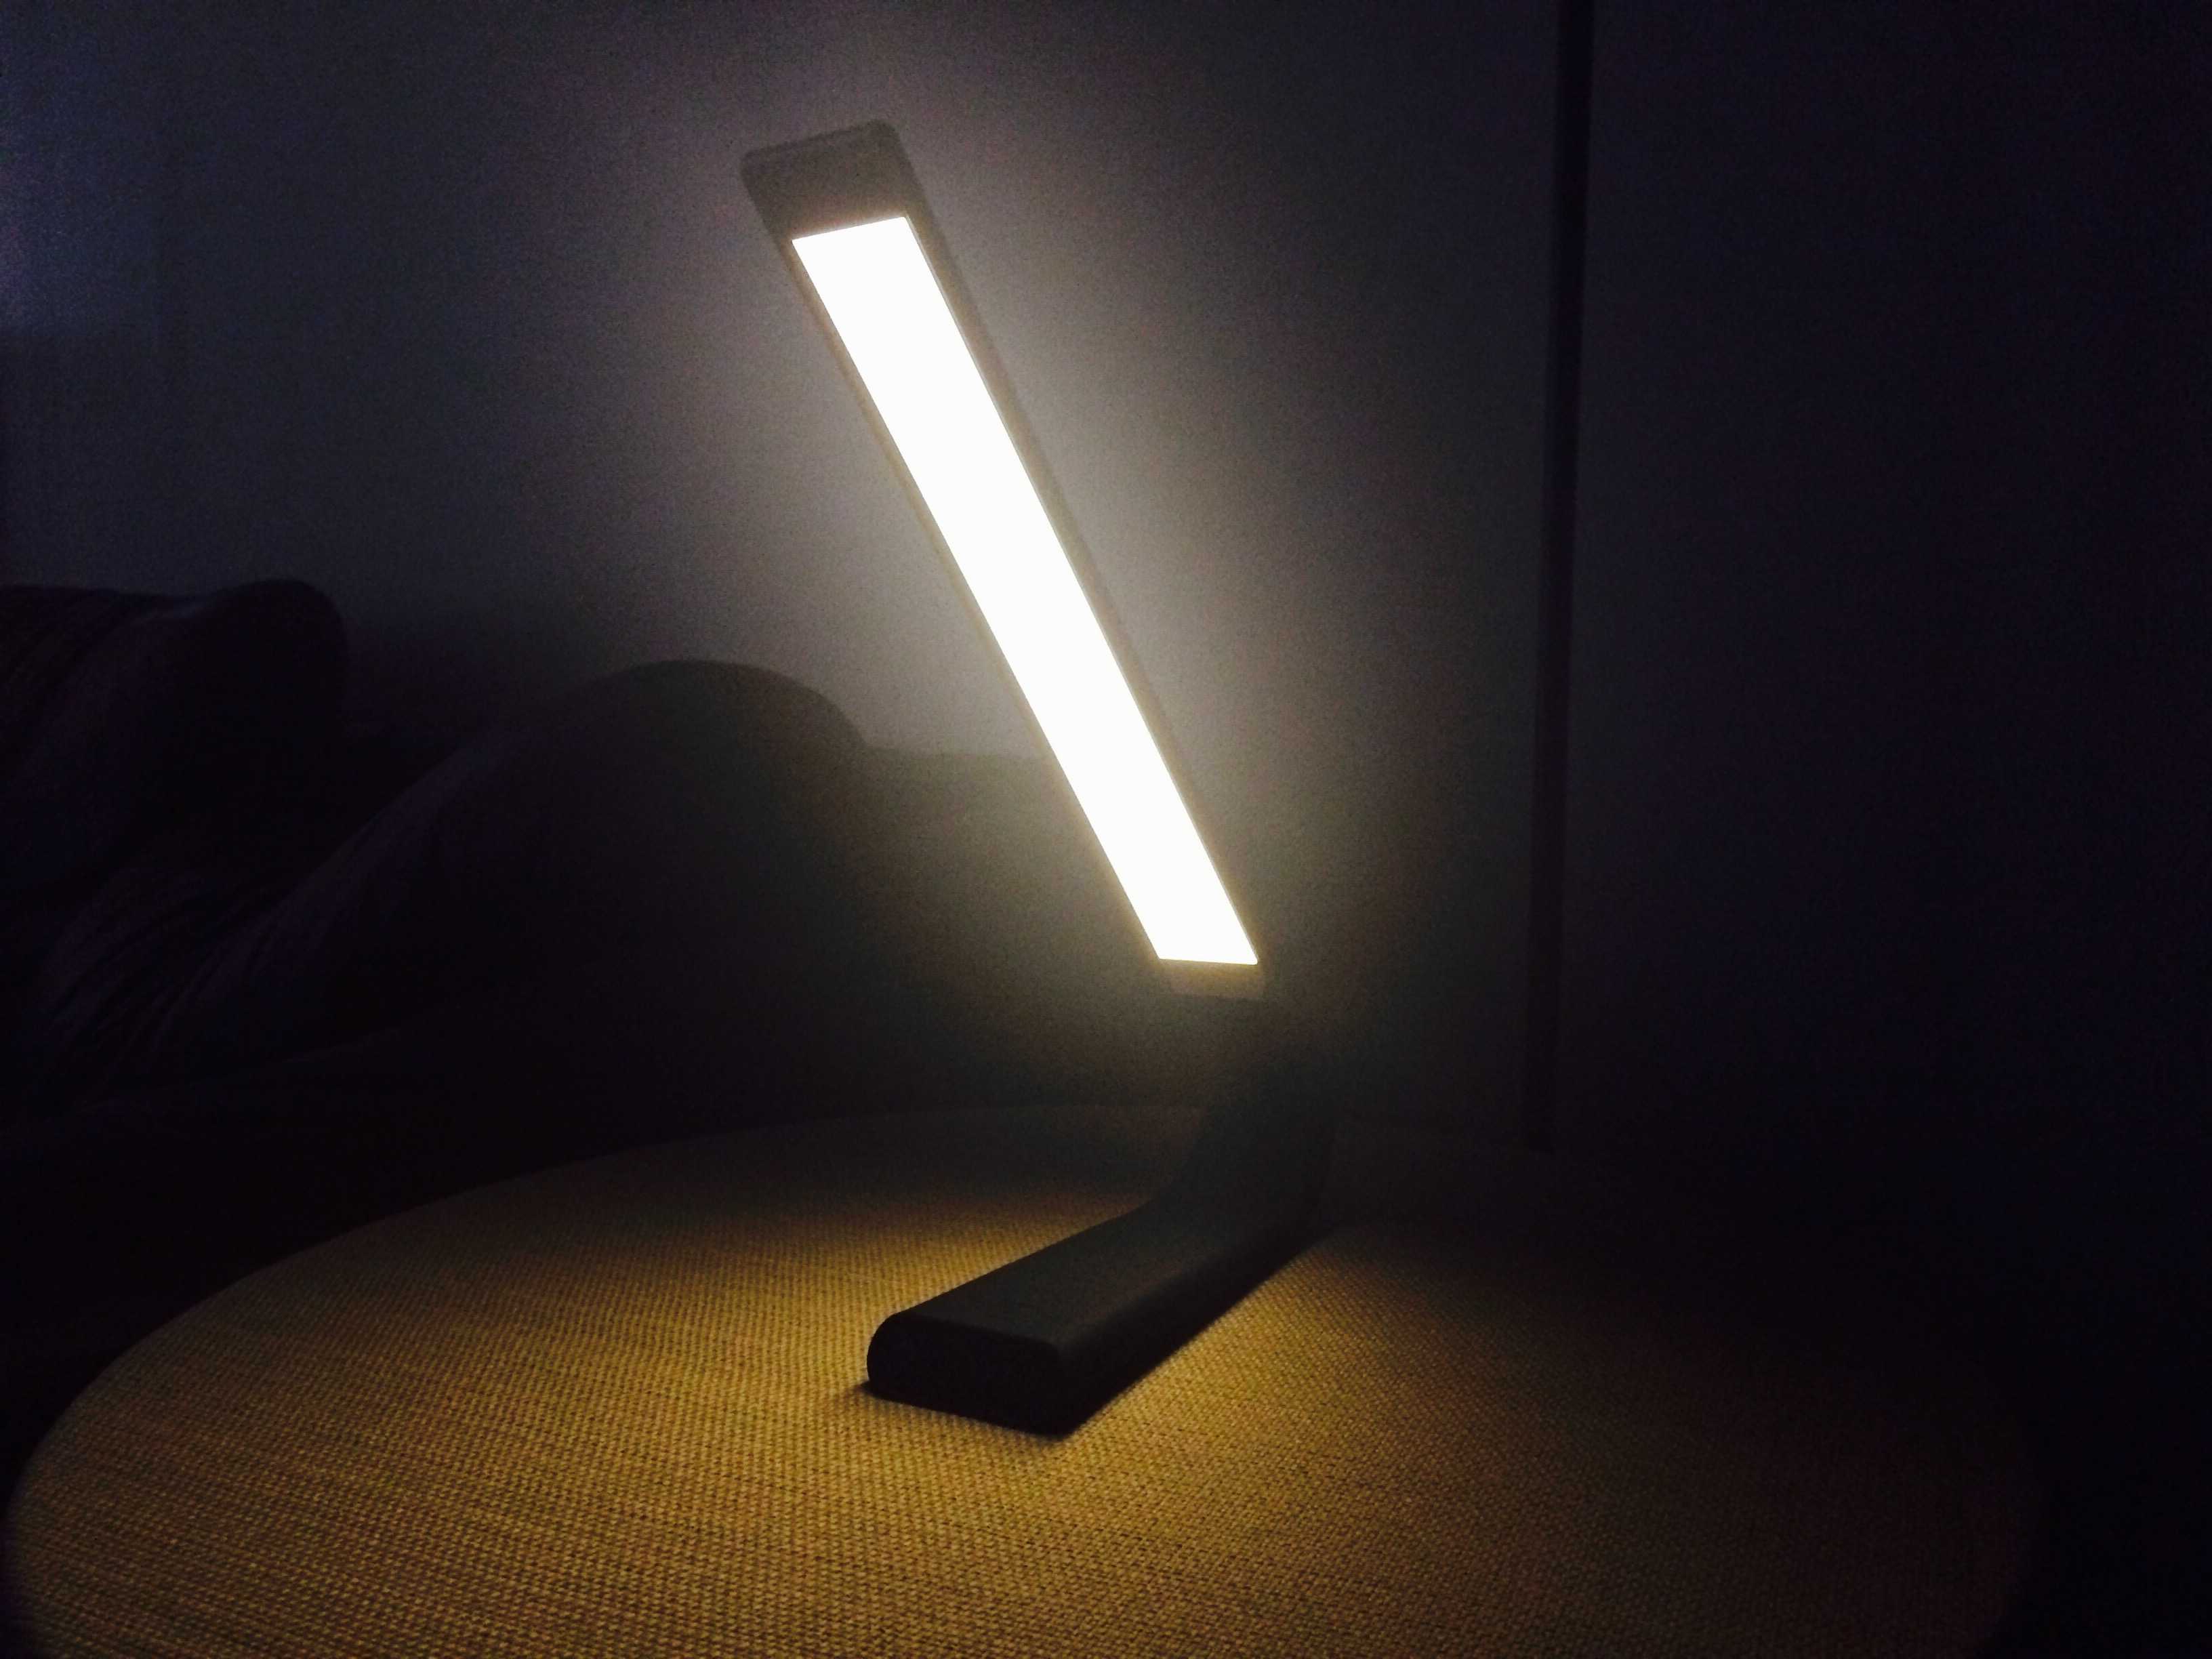 Lumiere lamp by Retina Light